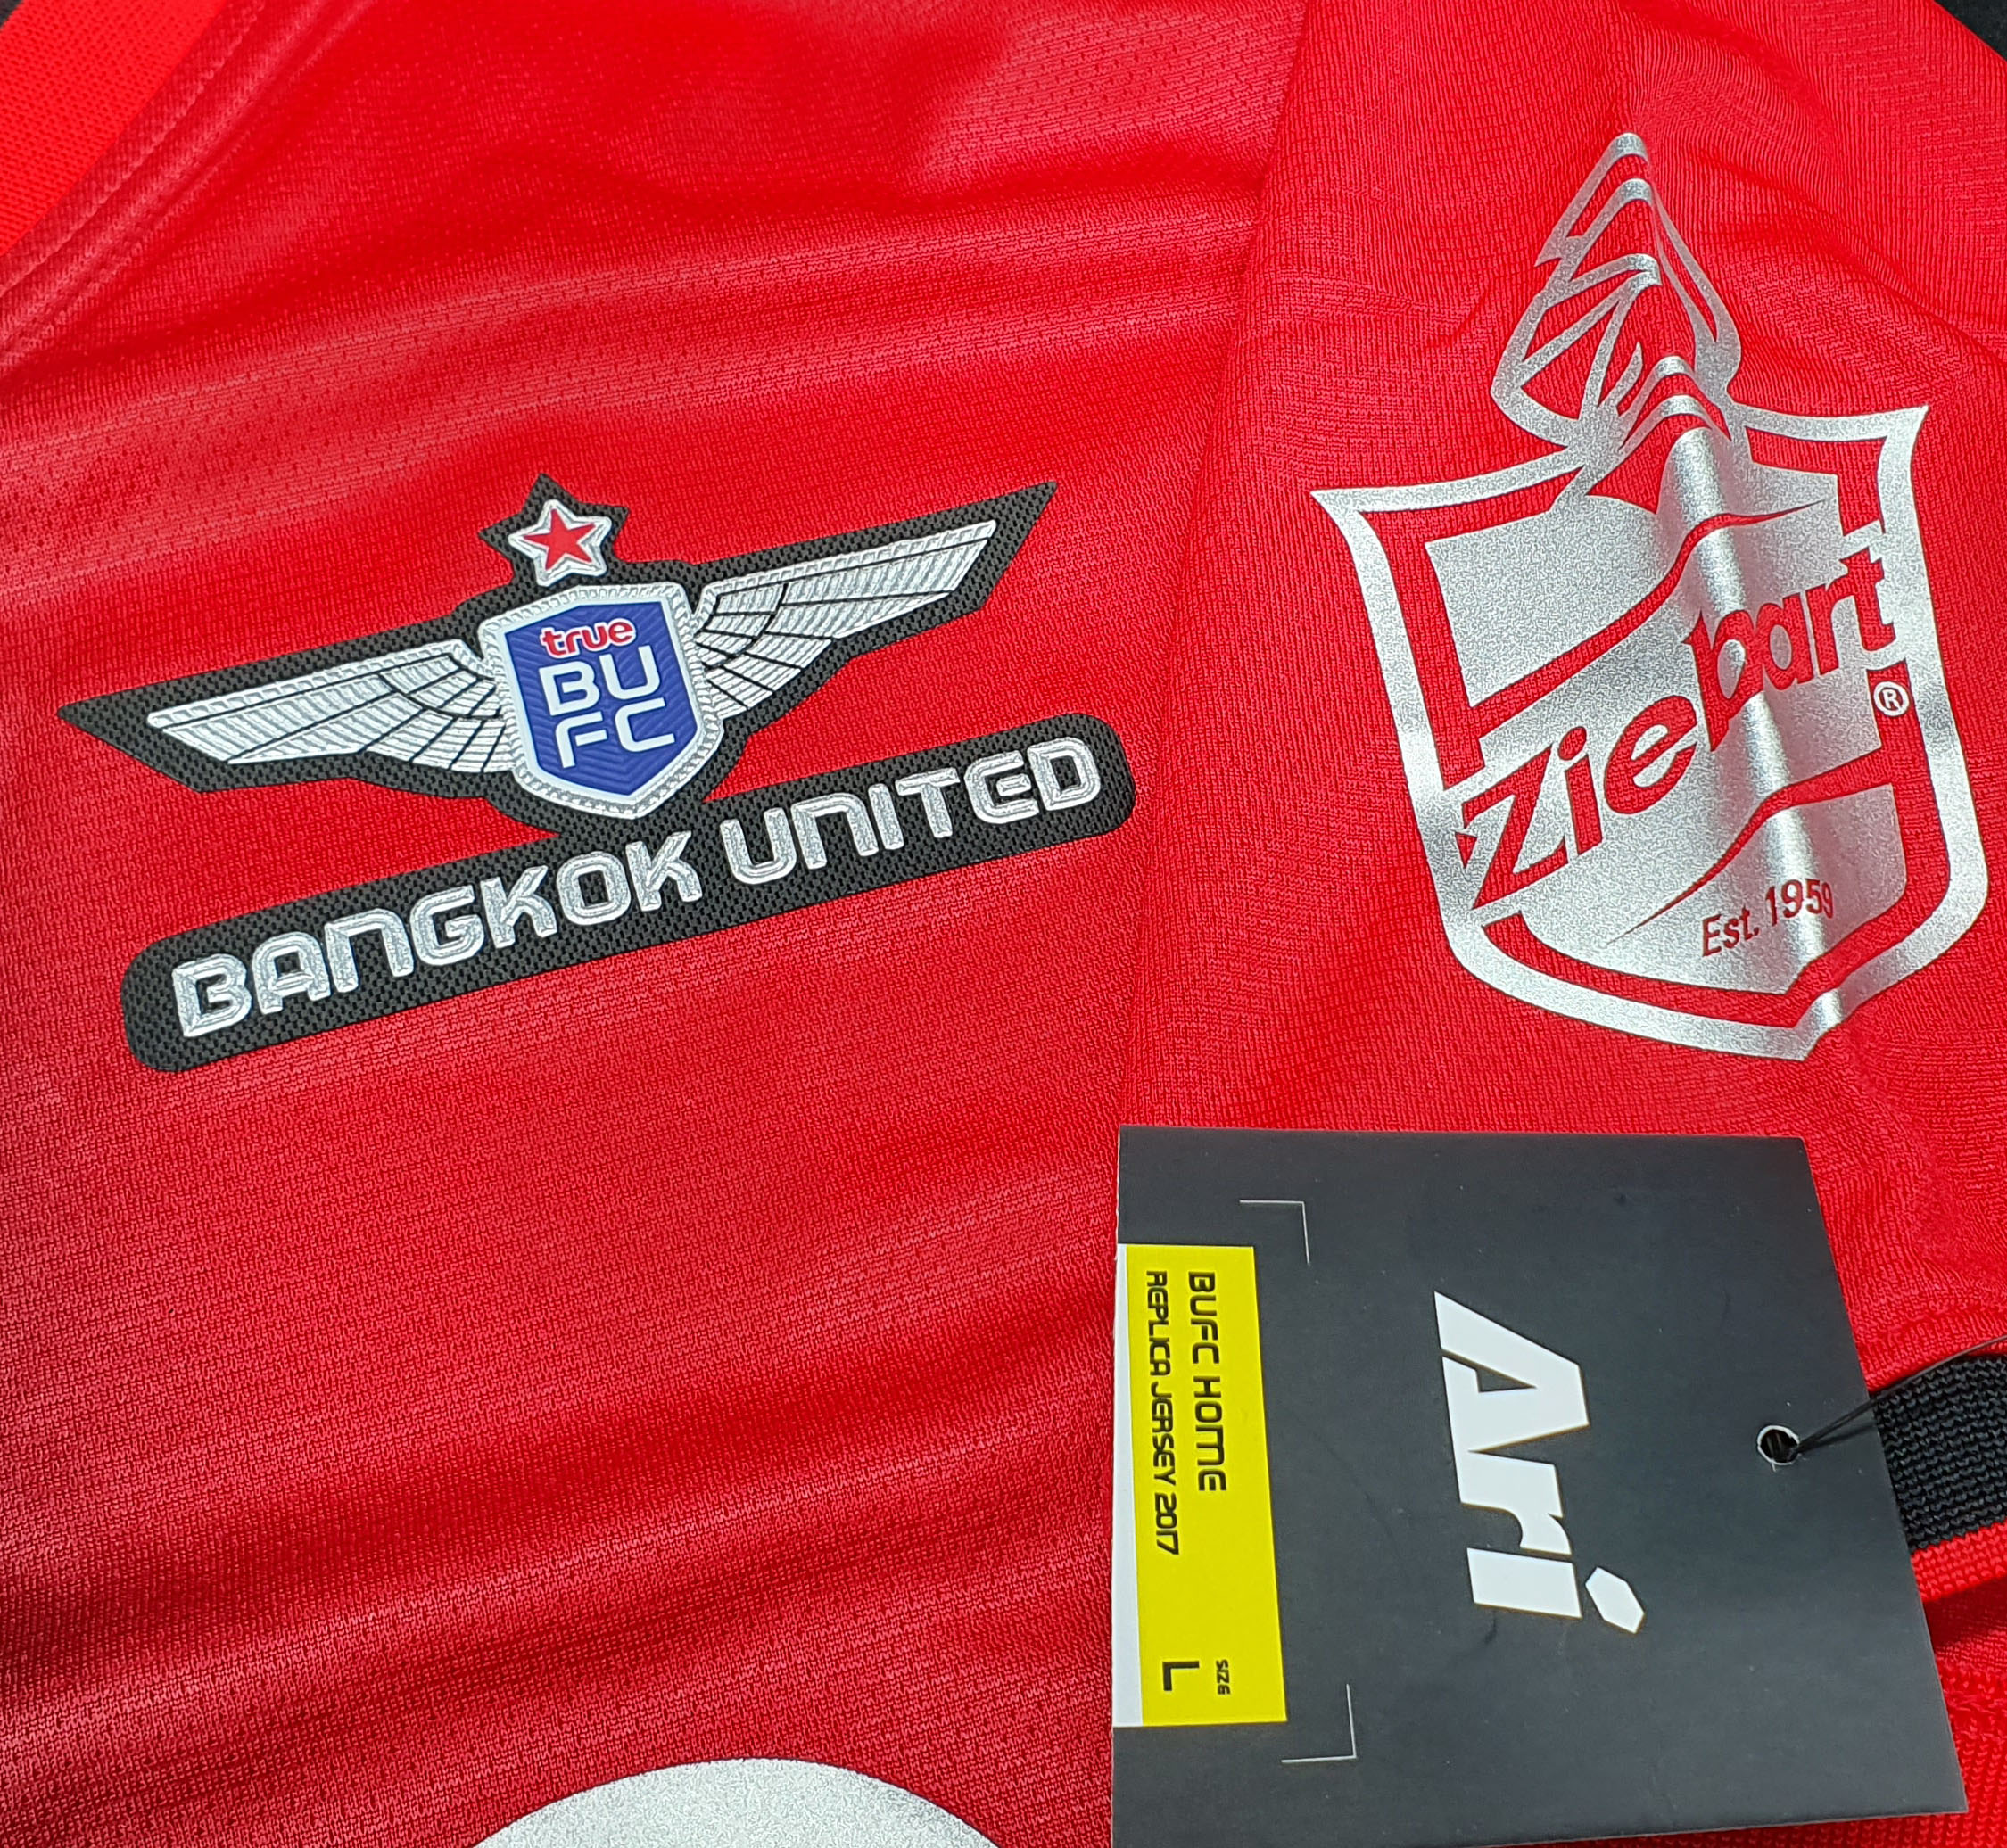 Ari football shirt Bangkok United F.C. 2017/18